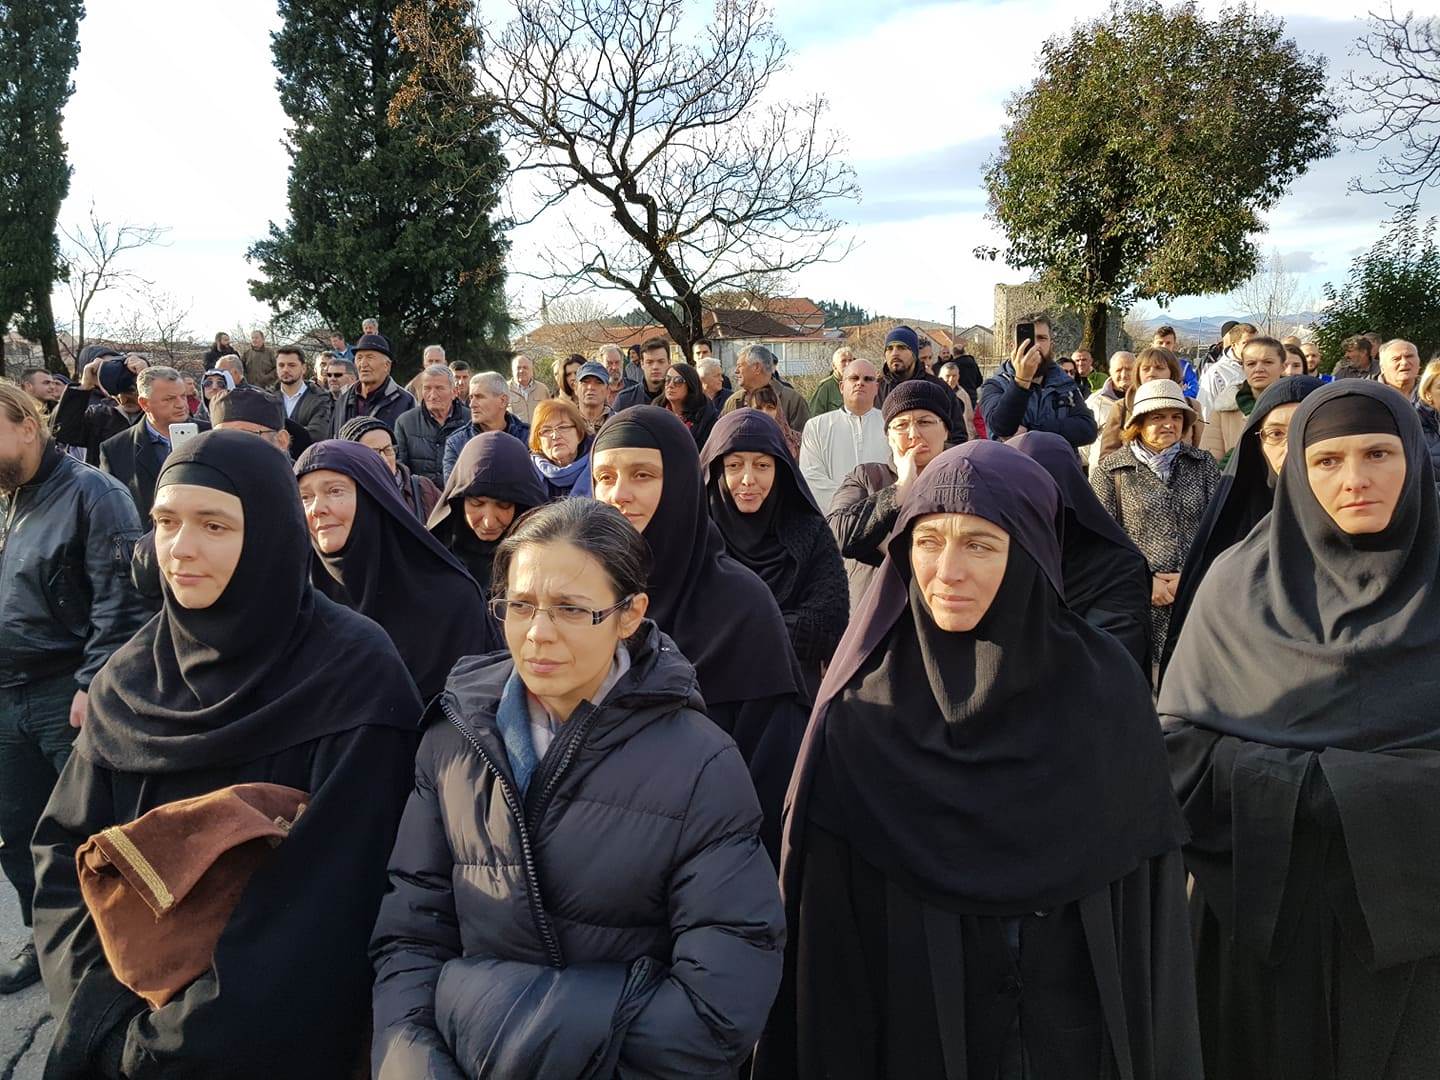  Sveštenici i monasi ispred Skupštine Crne Gore: Stop zakonu o veroispovesti 